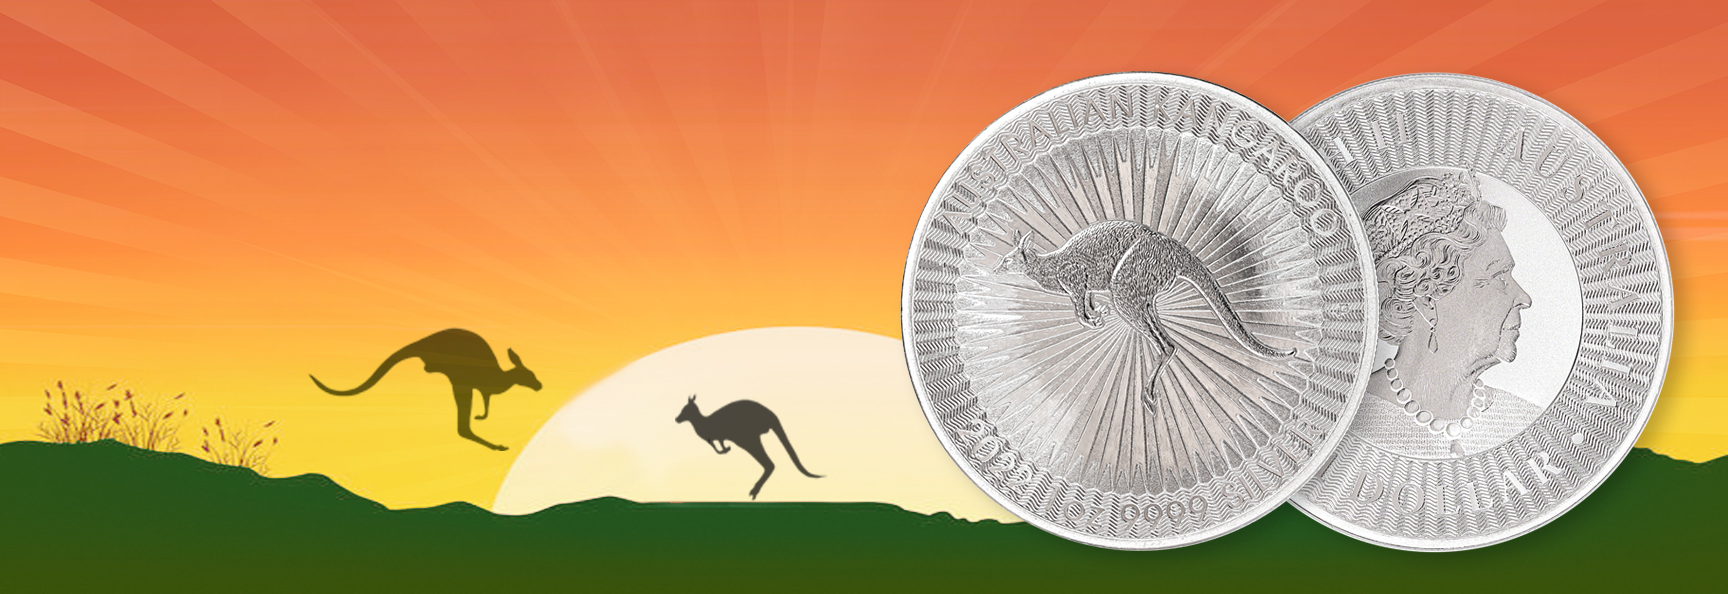 Silver Kangaroo 2022 at 3.95 USD above spot!